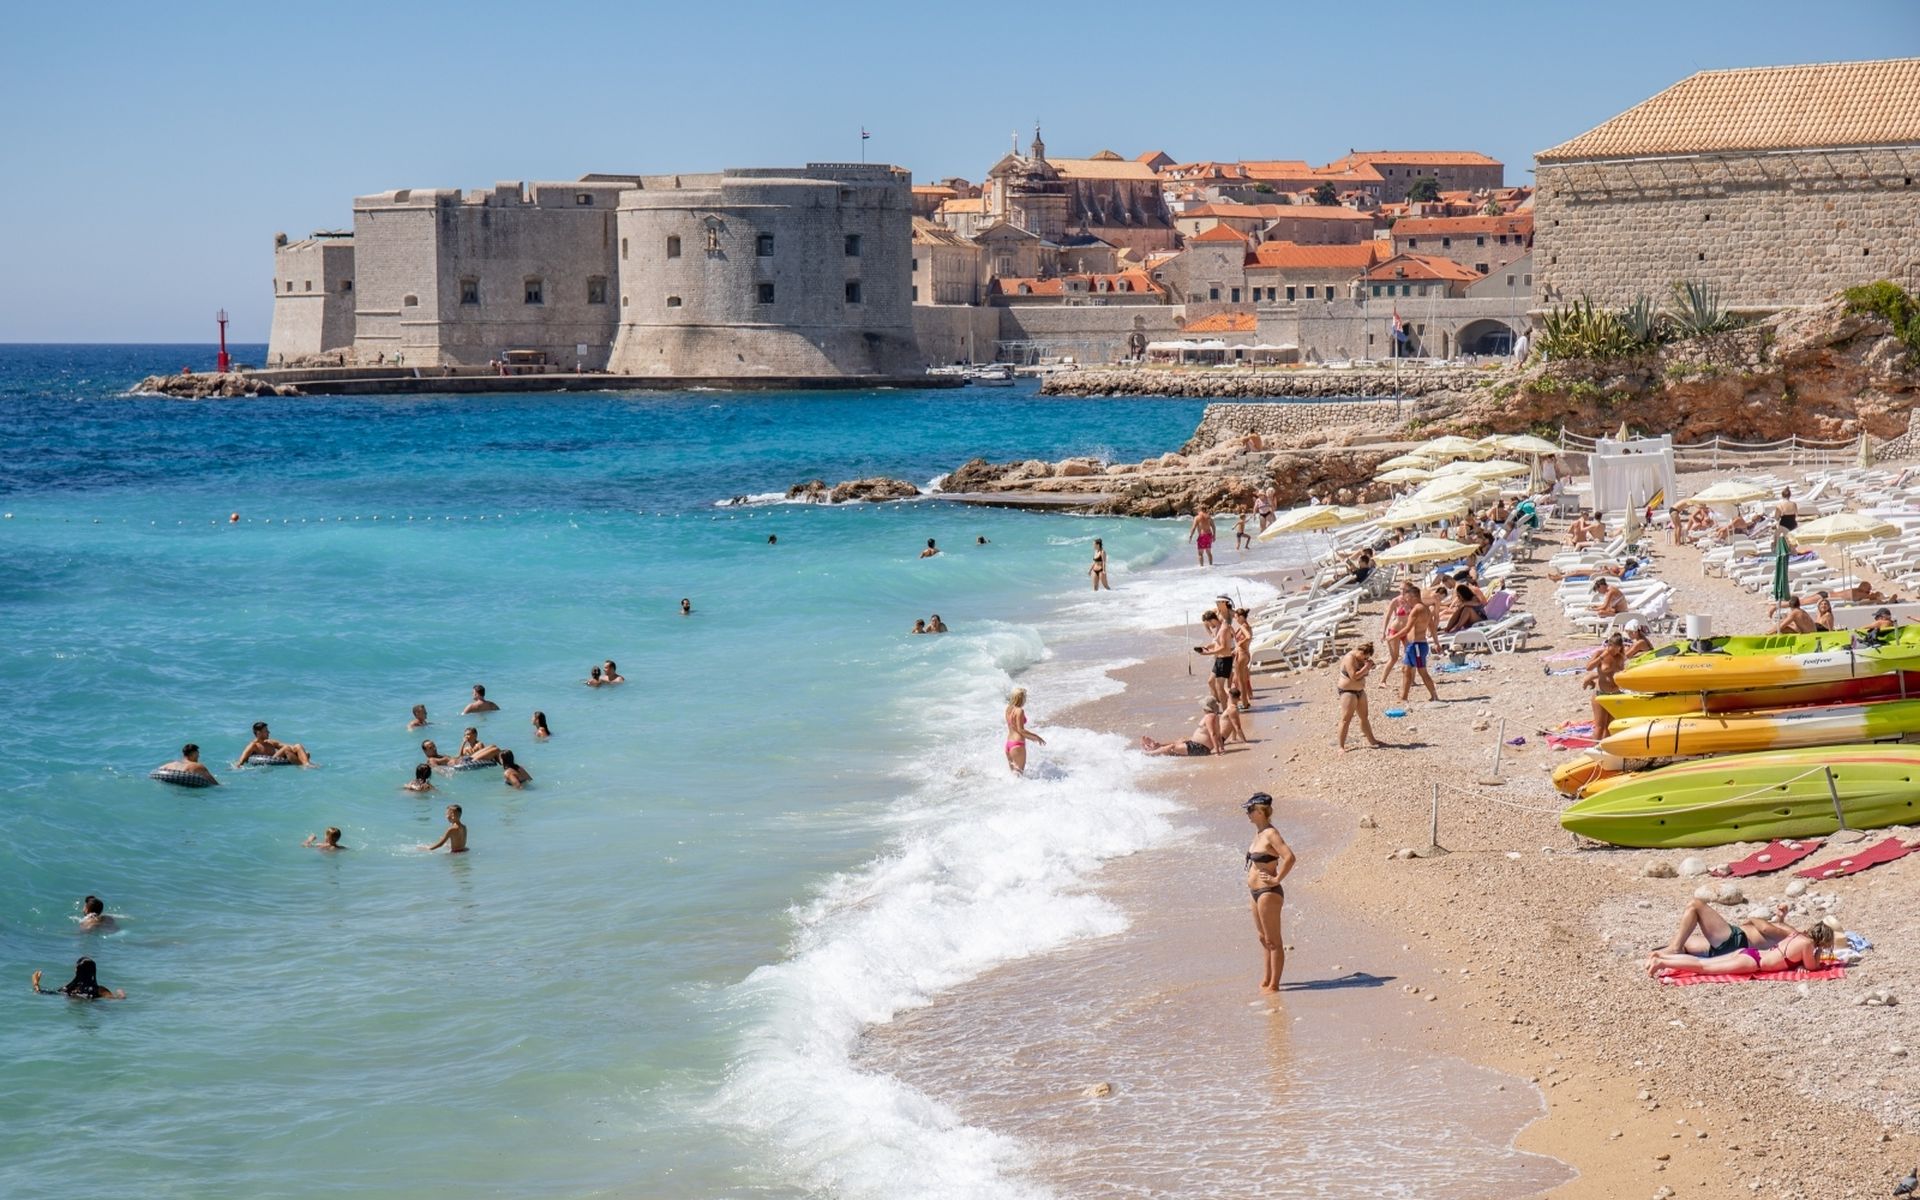 29.08.2020., Plaza Banje, Dubrovnik  - Turisti iskoristili suncan i vjetrovit dan za kupanje na plazi Banje
Photo: Grgo Jelavic/PIXSELL